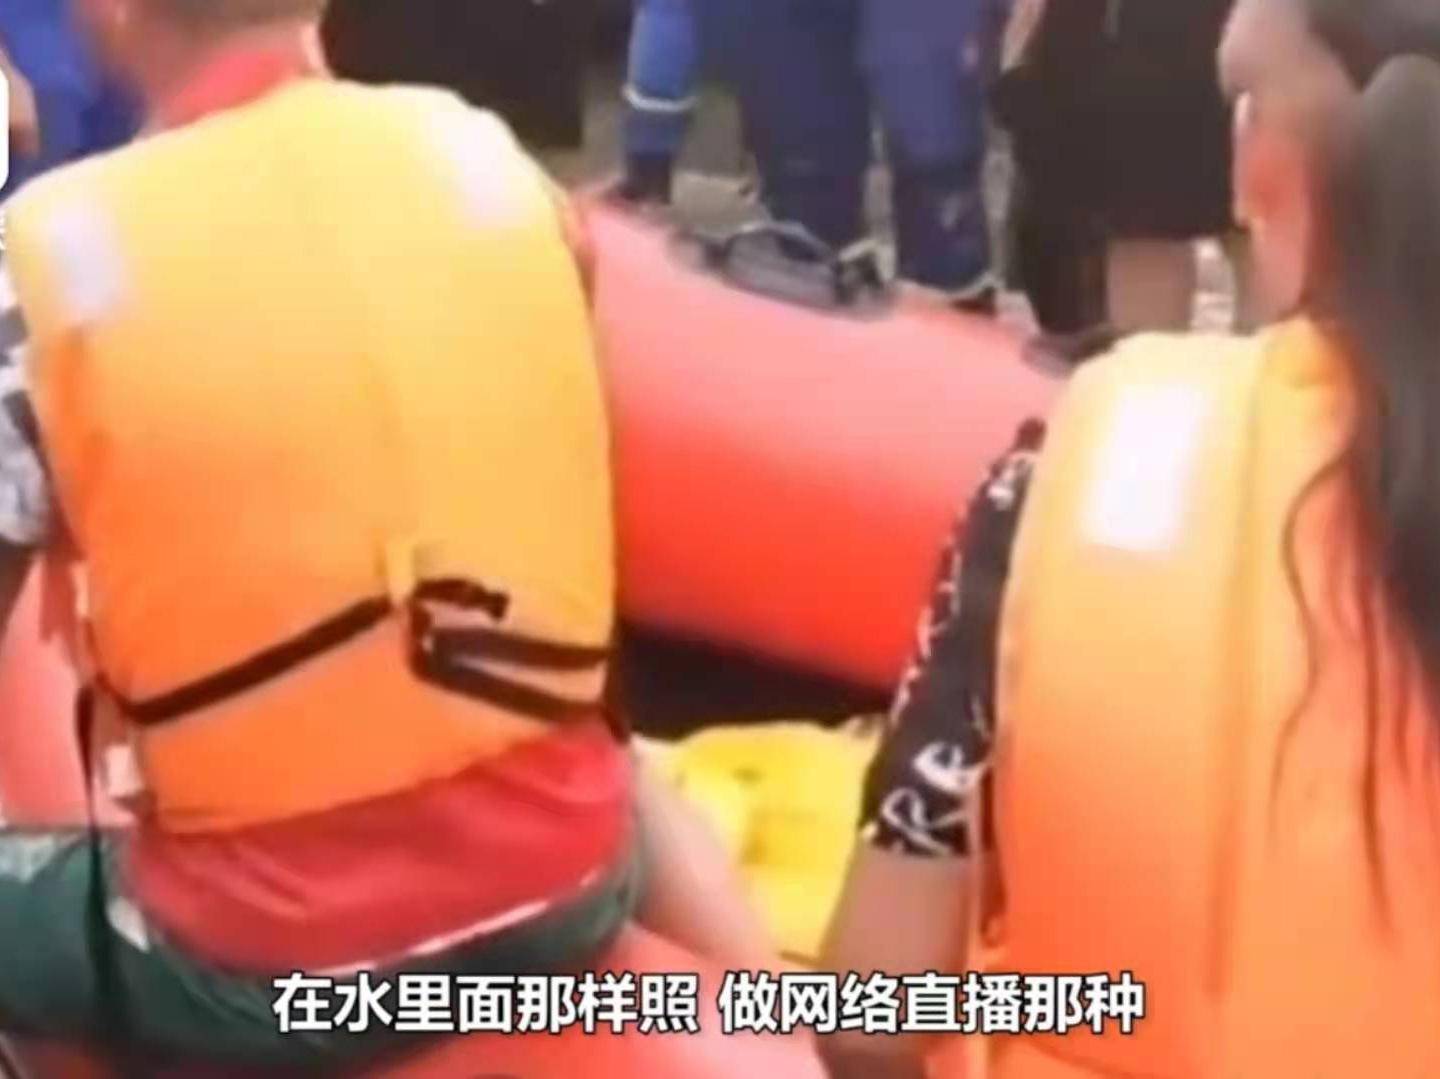 網紅偷救生艇作秀引公憤，遭救援隊截獲，圍觀大眾大罵「人渣」 娛樂 第20張